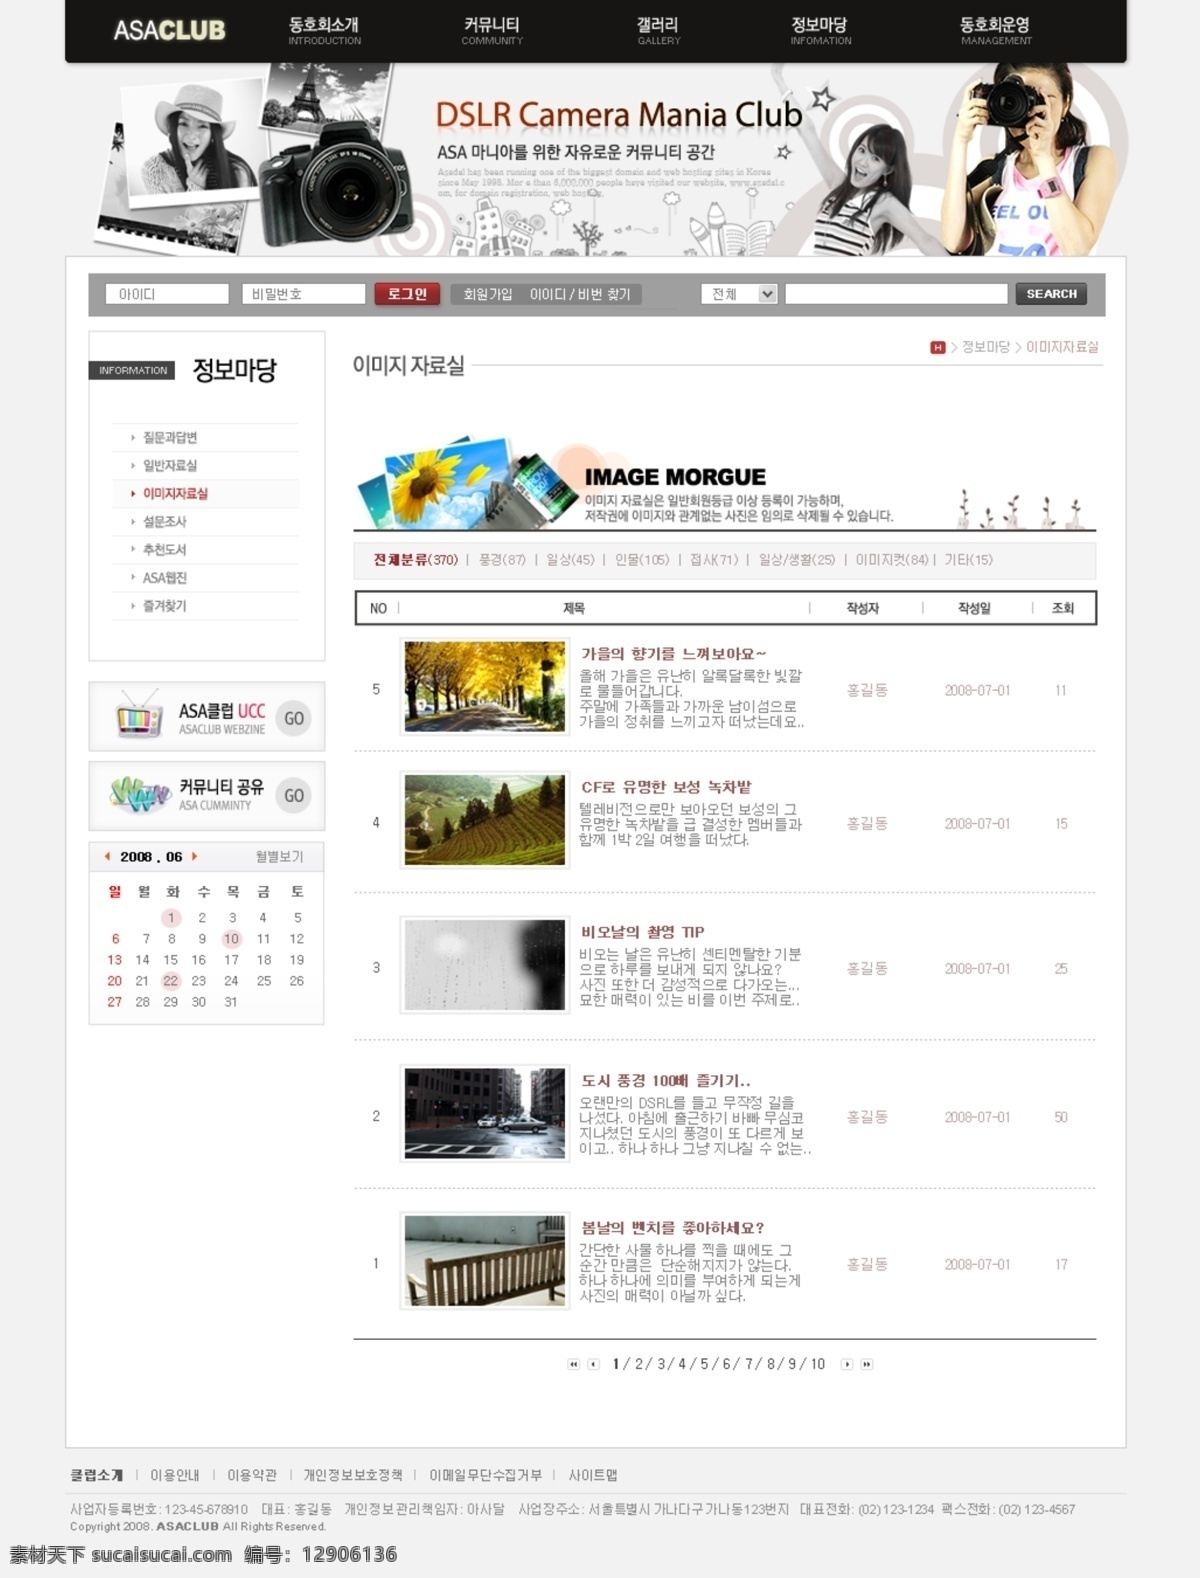 韩国模板 韩国网页模板 咖啡海报 咖啡宣传单 摄影网站 书 数码网站 网页模板 宣传单 海报 灰色网站系列 元素 元素网站 照相机网站 网站图模板 网站模版 网页素材 源文件 其他海报设计